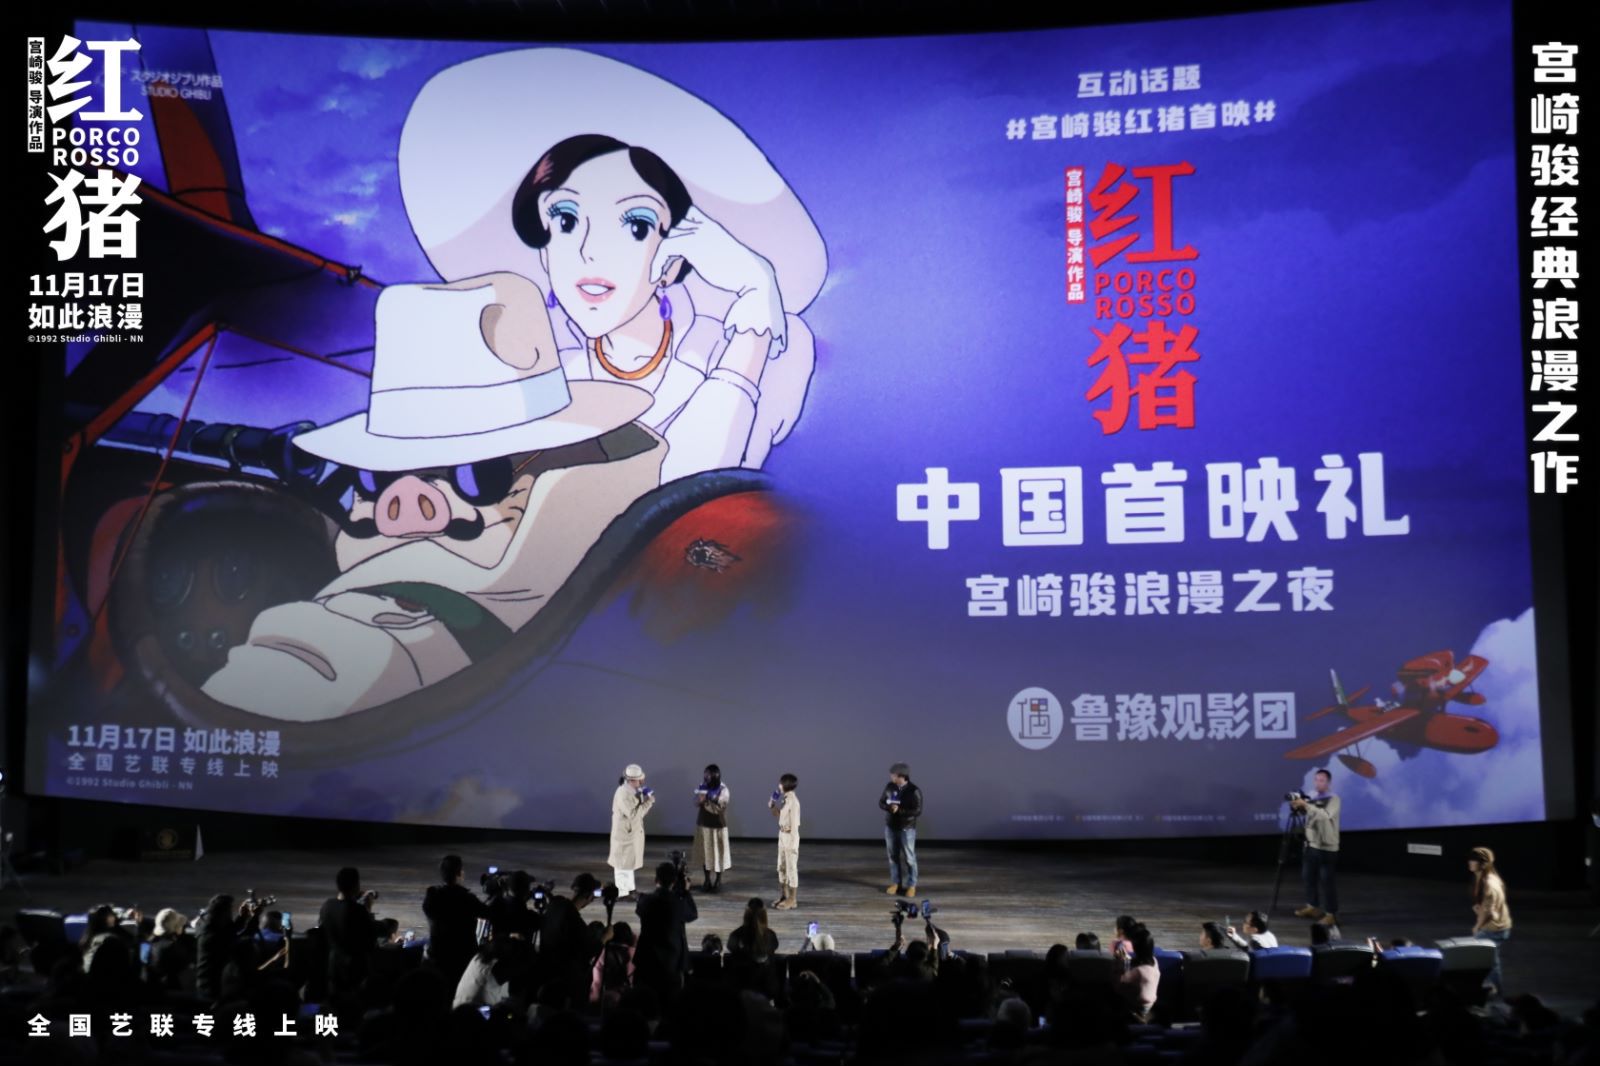 宫崎骏经典力作《红猪》中国首映 11月17日艺联上映